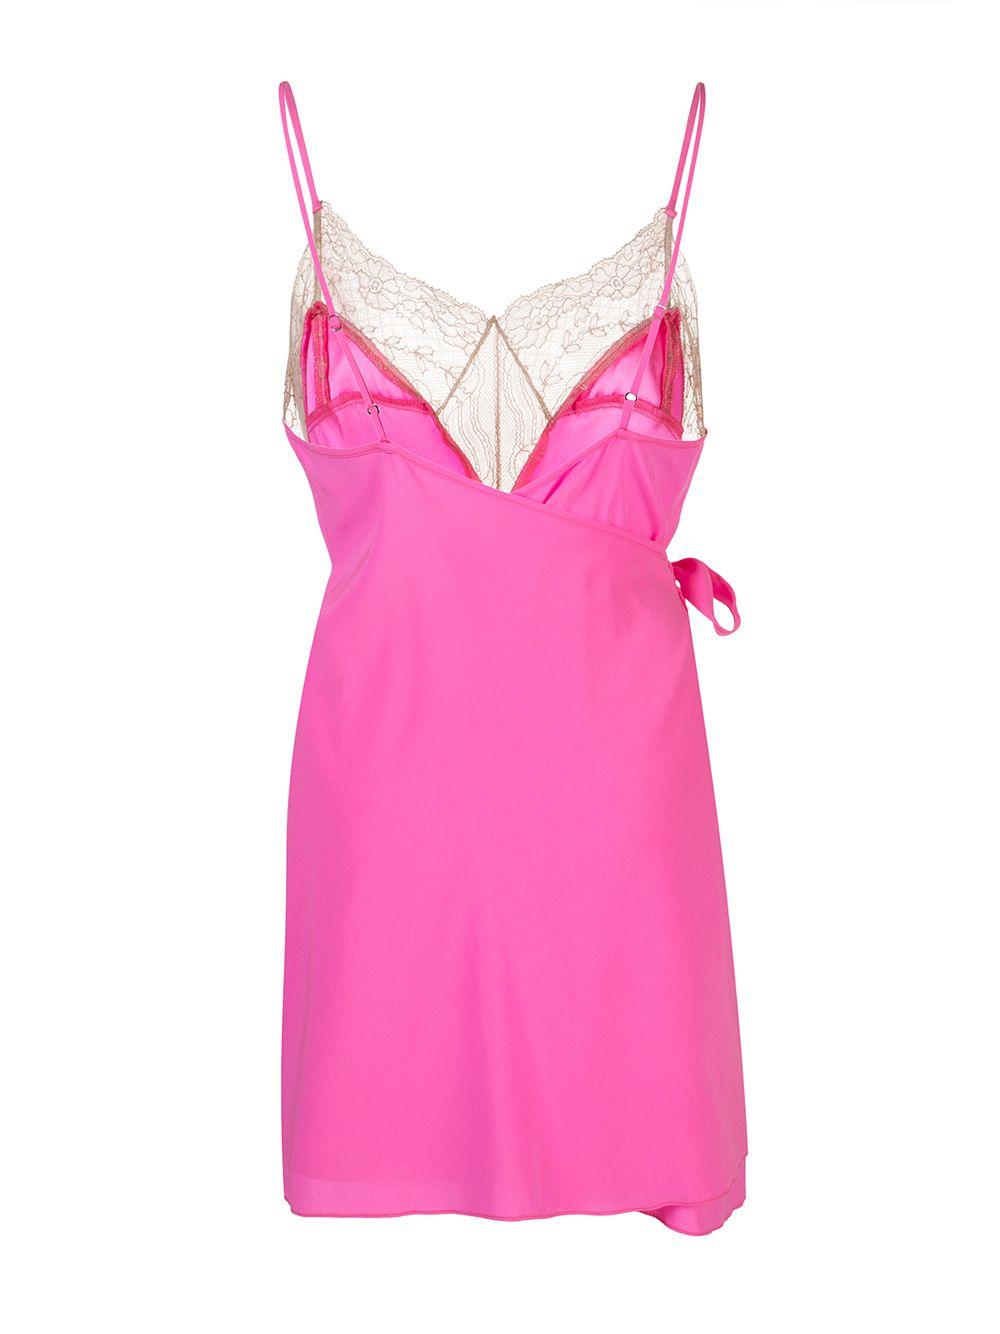 Kiki de Montparnasse Silk Le Shock Lace-trimmed Cami Dress in Pink - Lyst